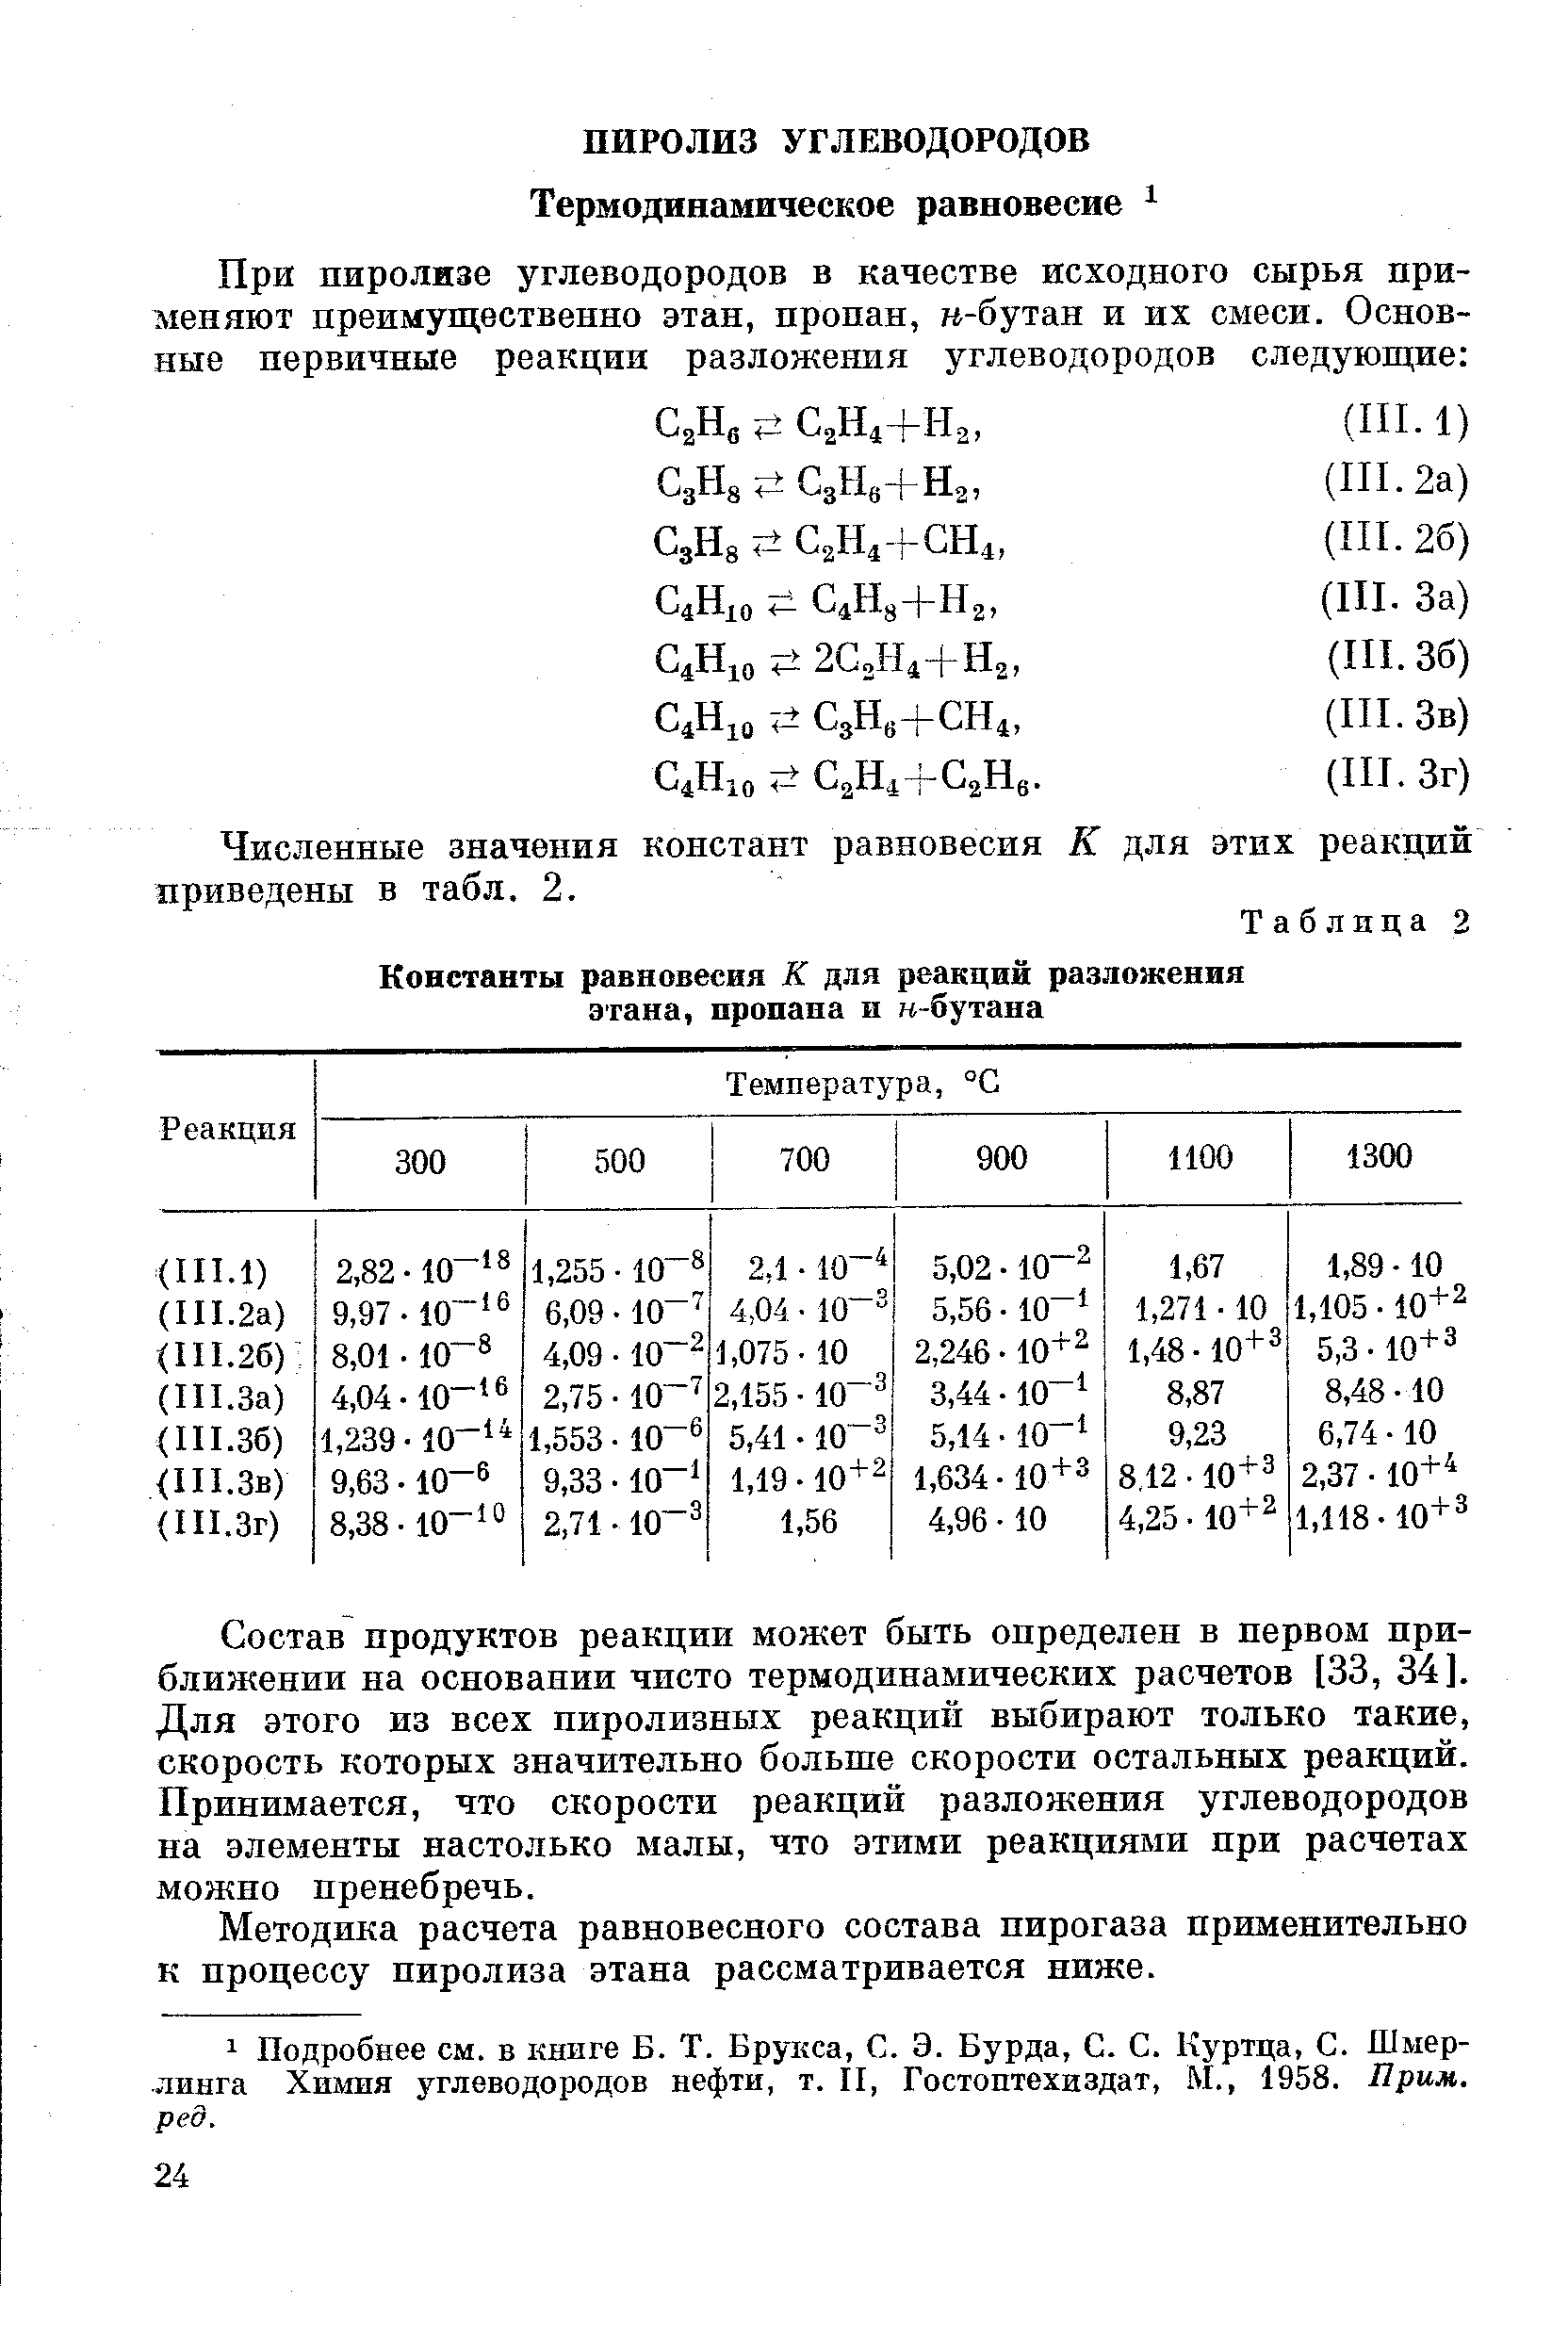 Численные значения констант равновесия К для этих реакций приведены в табл. 2.